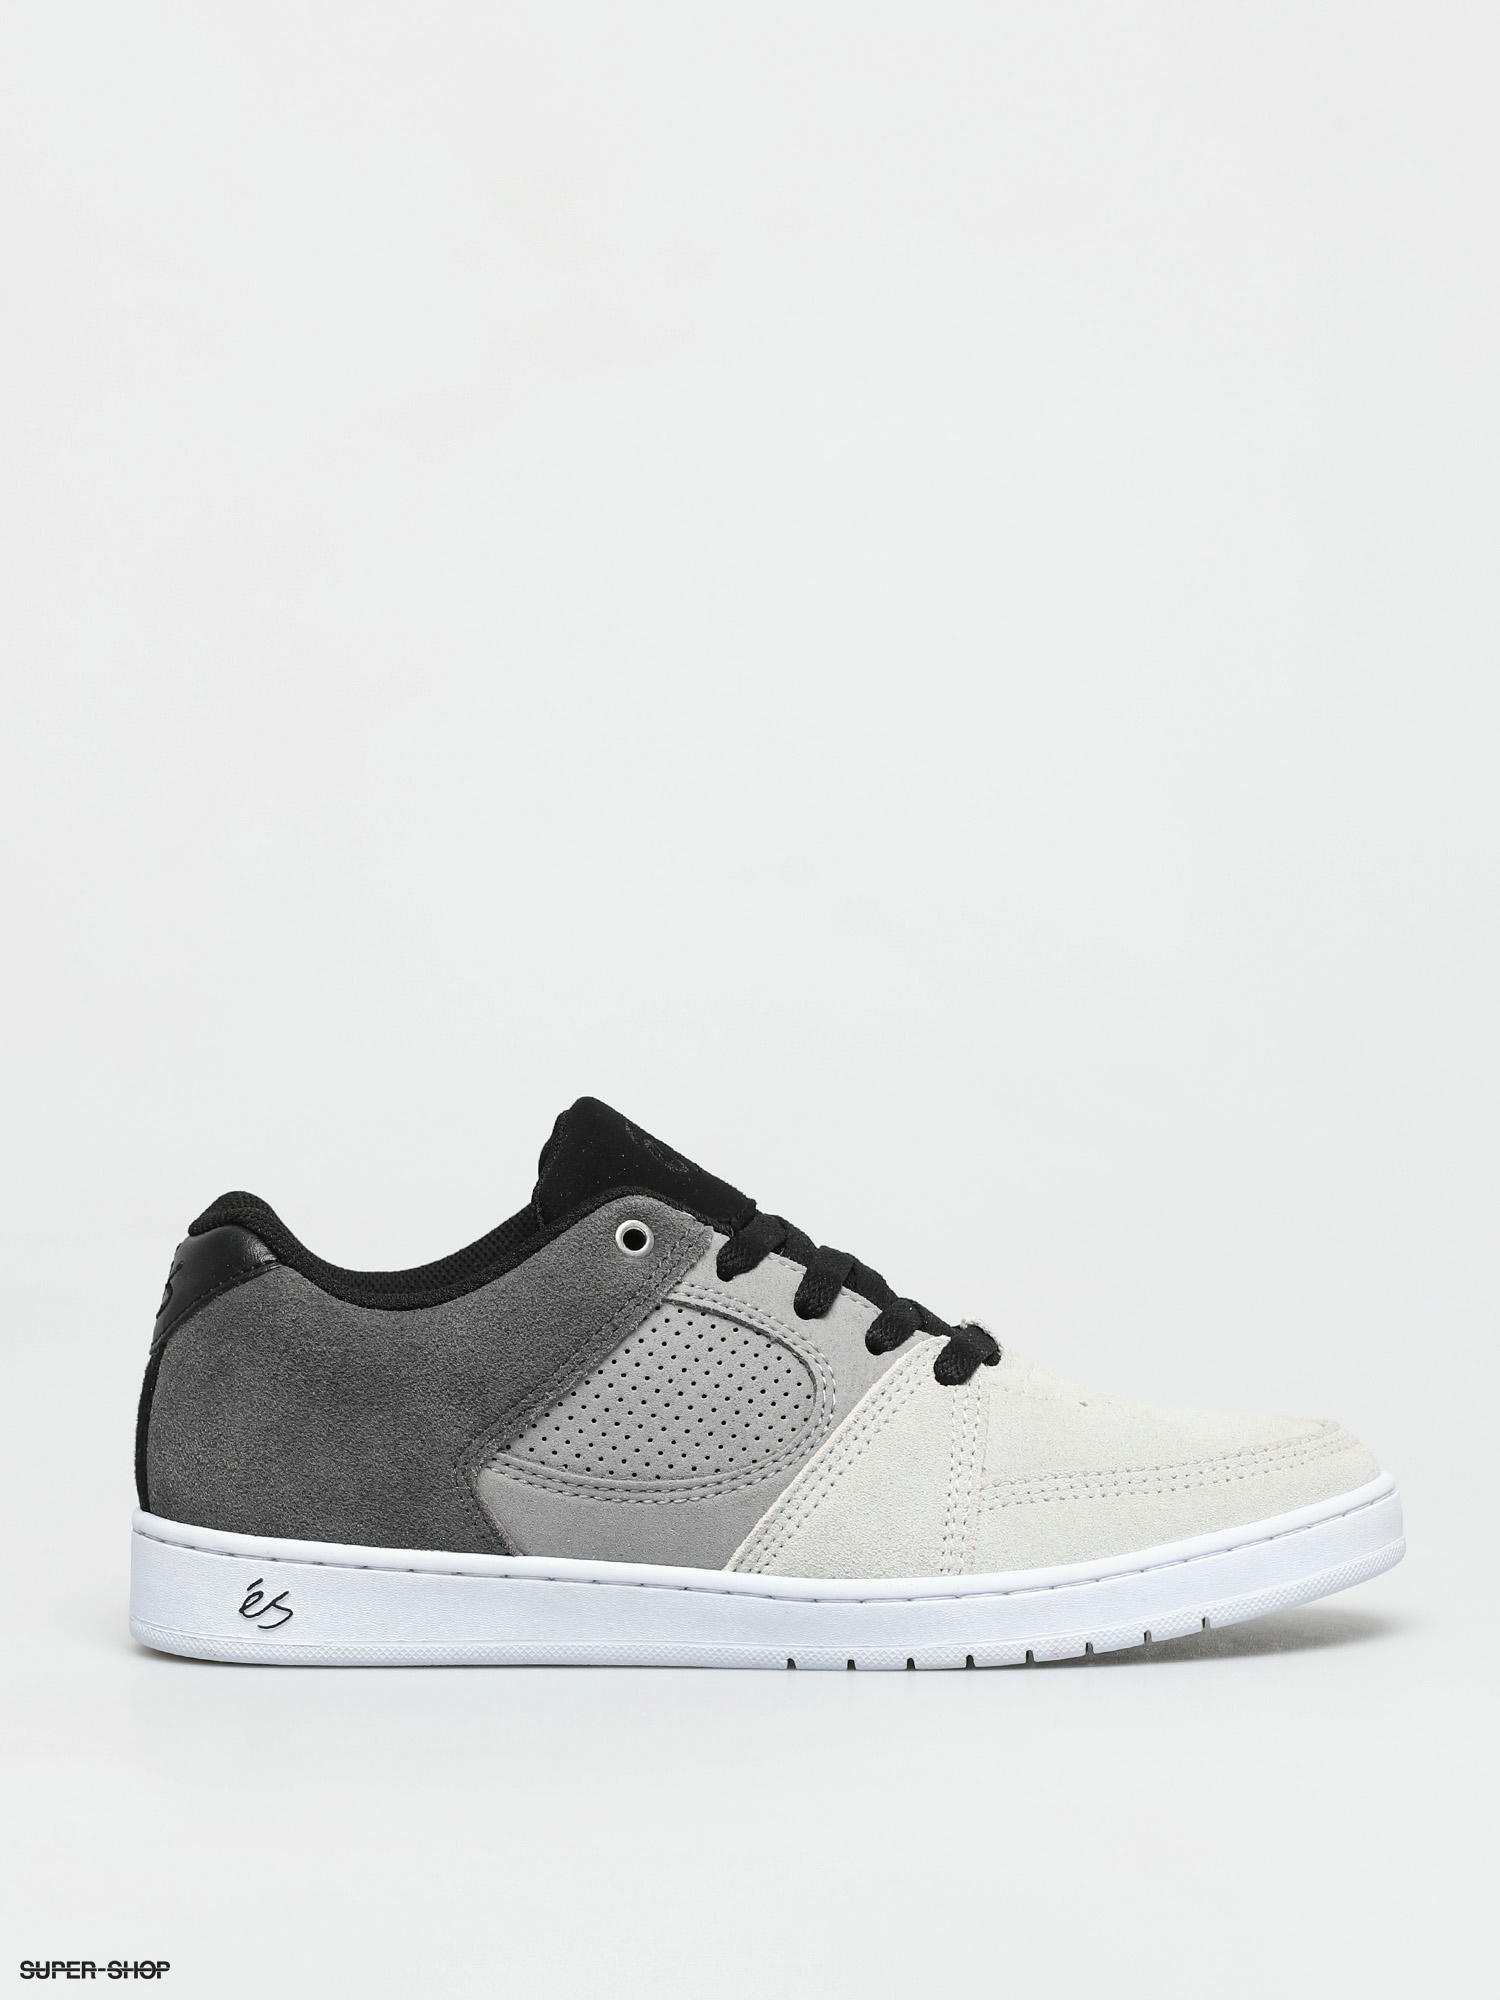 eS Accel Slim Shoes (light grey/dark grey)